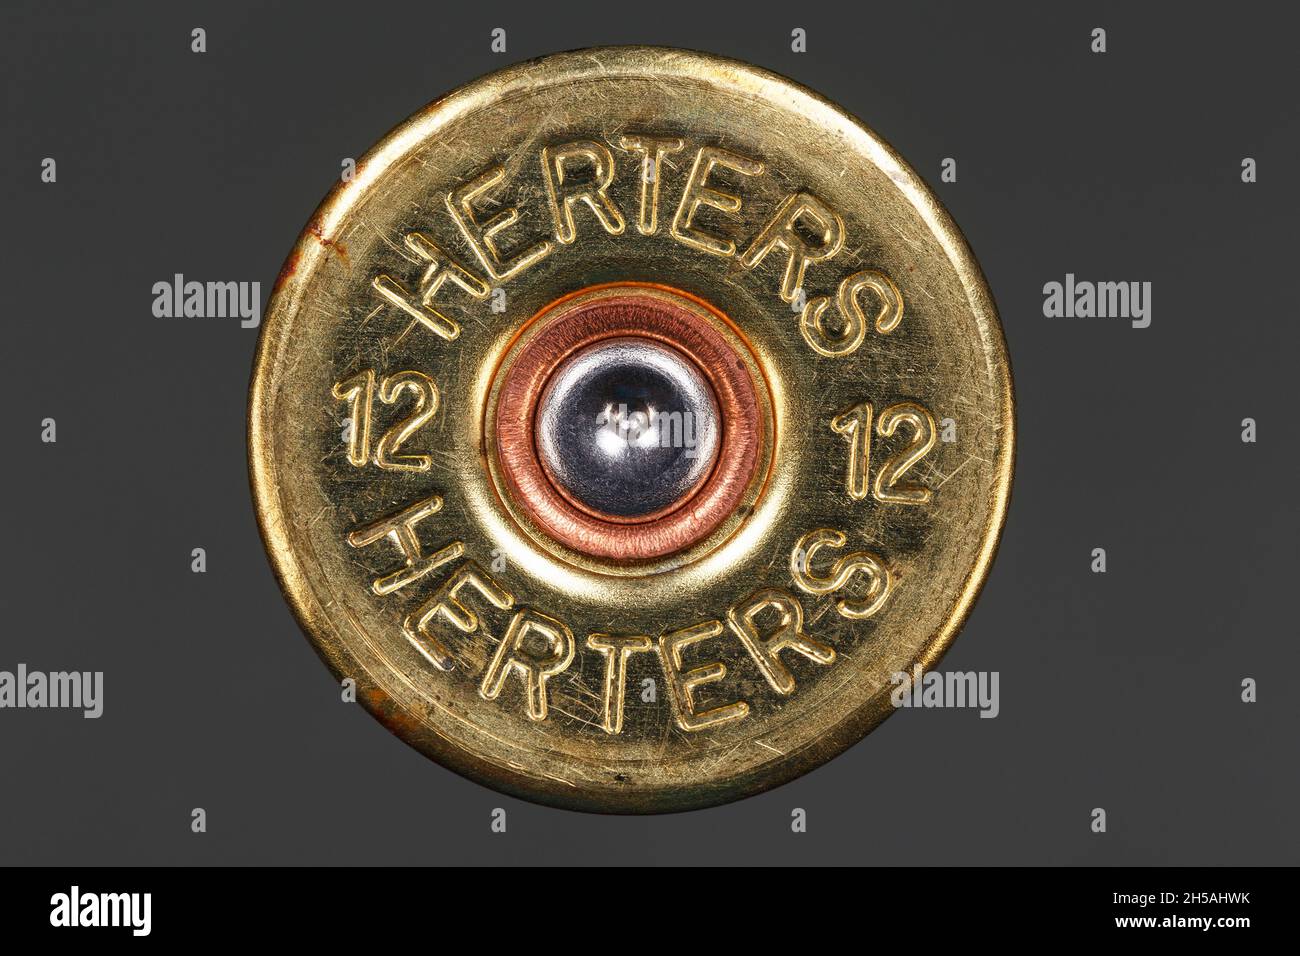 Fond d'un boîtier de calibre 12 avec un apprêt percé sur fond gris.Photographie macro Banque D'Images